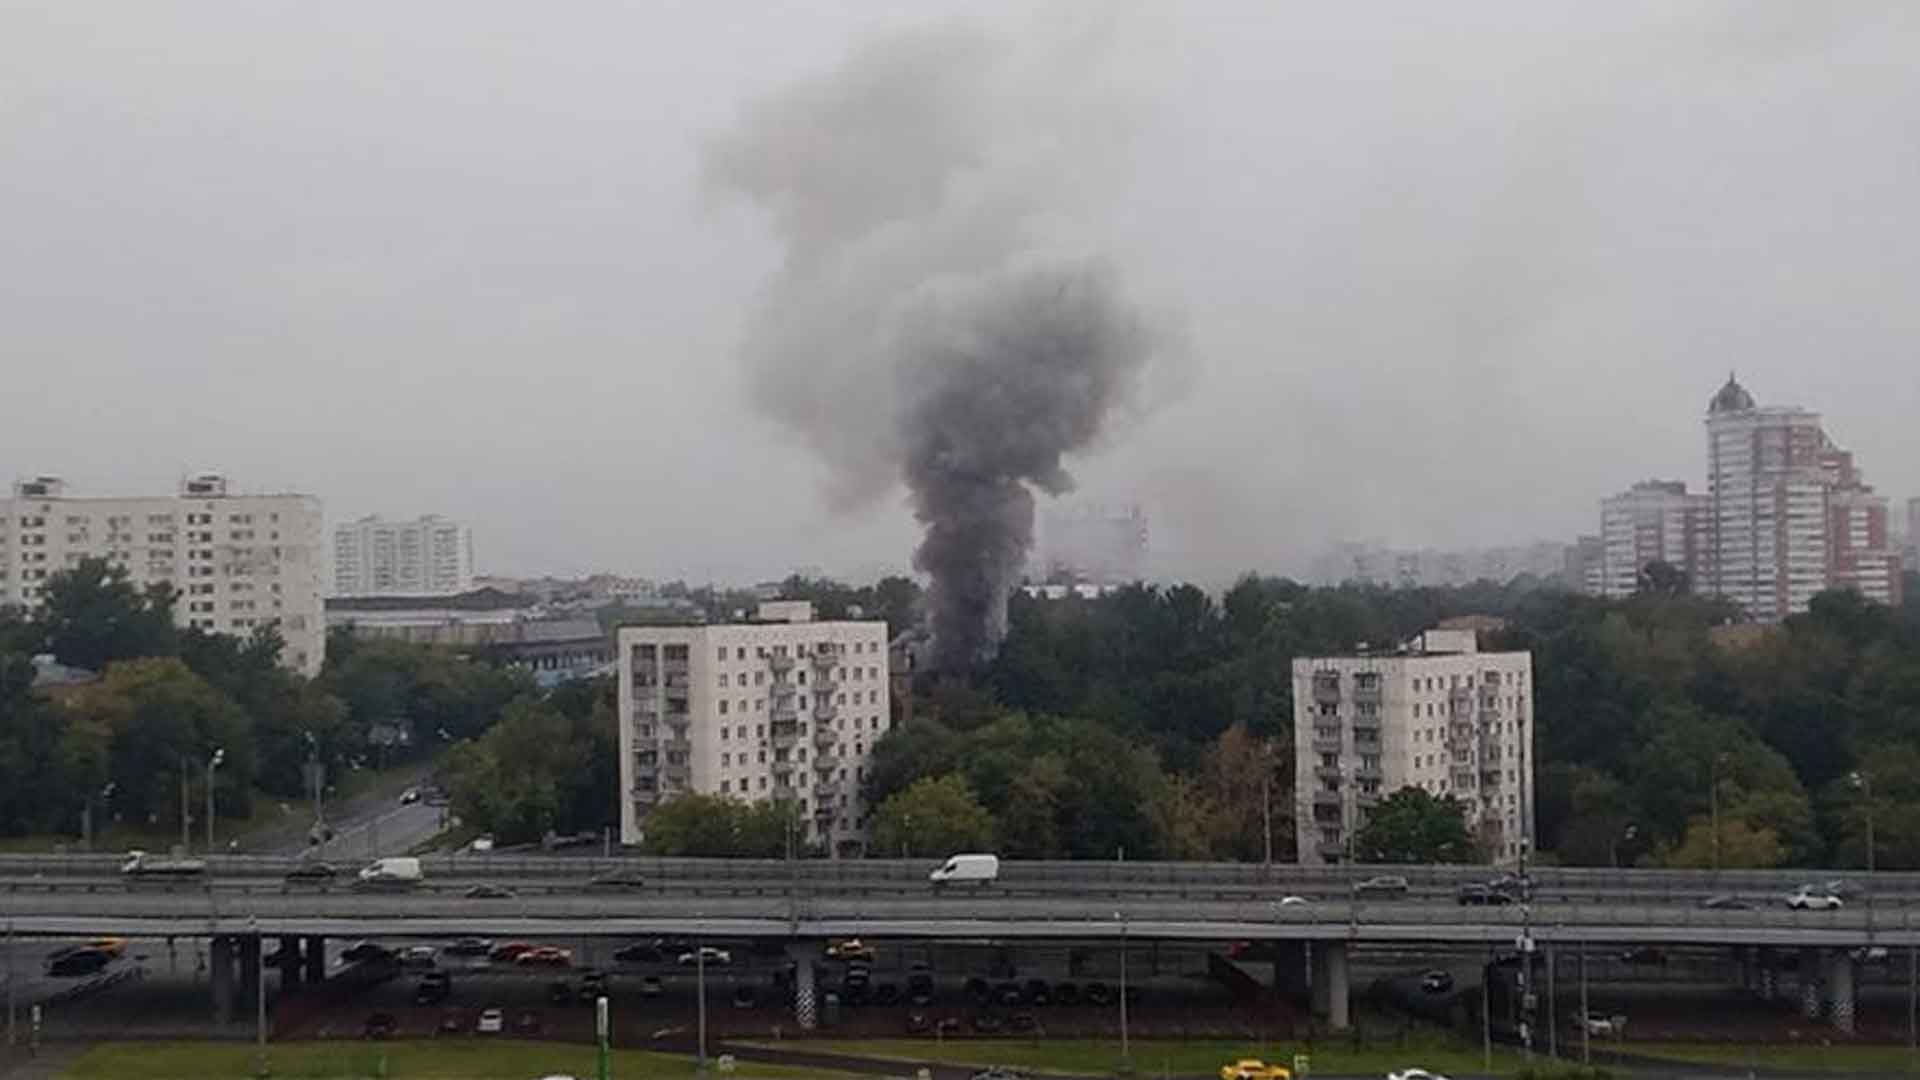 Dailystorm - «Бабахнуло так, что все посыпалось»: очевидец рассказал о взрыве в доме в Москве